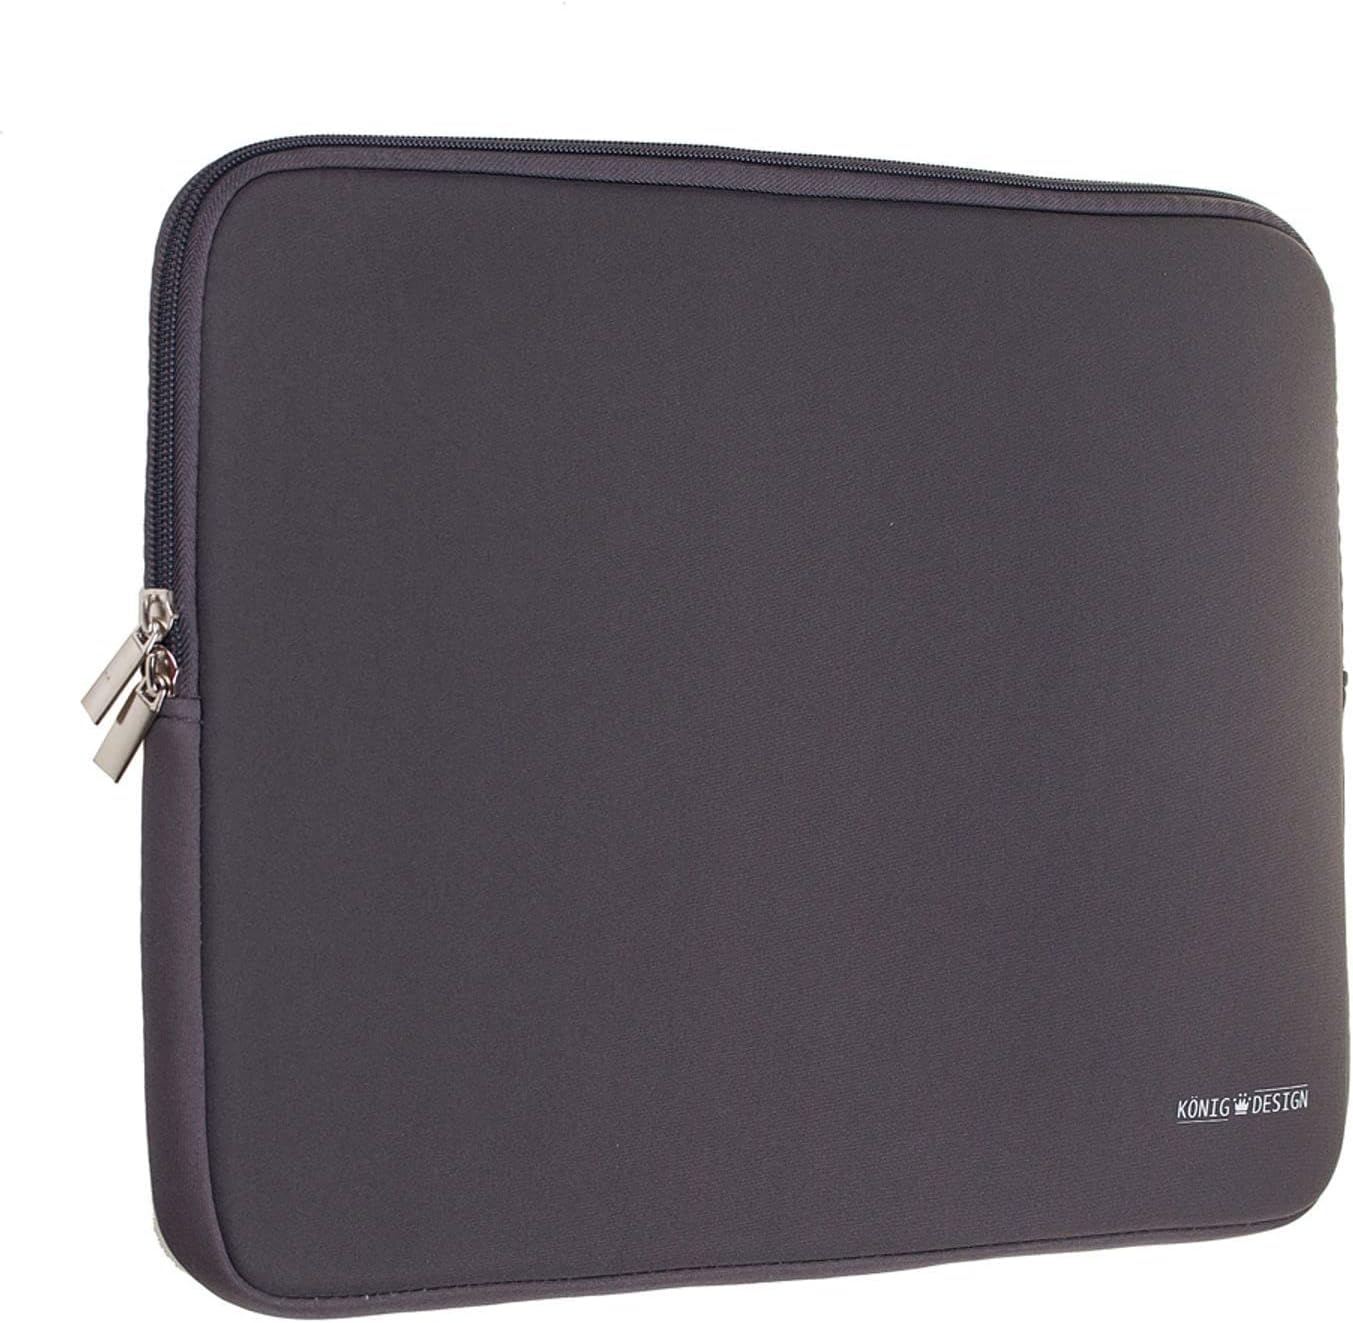 König Design Laptop Bag Laptop Sleeve 14 Inch Shockproof Notebook Bag Laptop Protective Case Notebook Sleeve Case PC Laptop Protective Case Grey